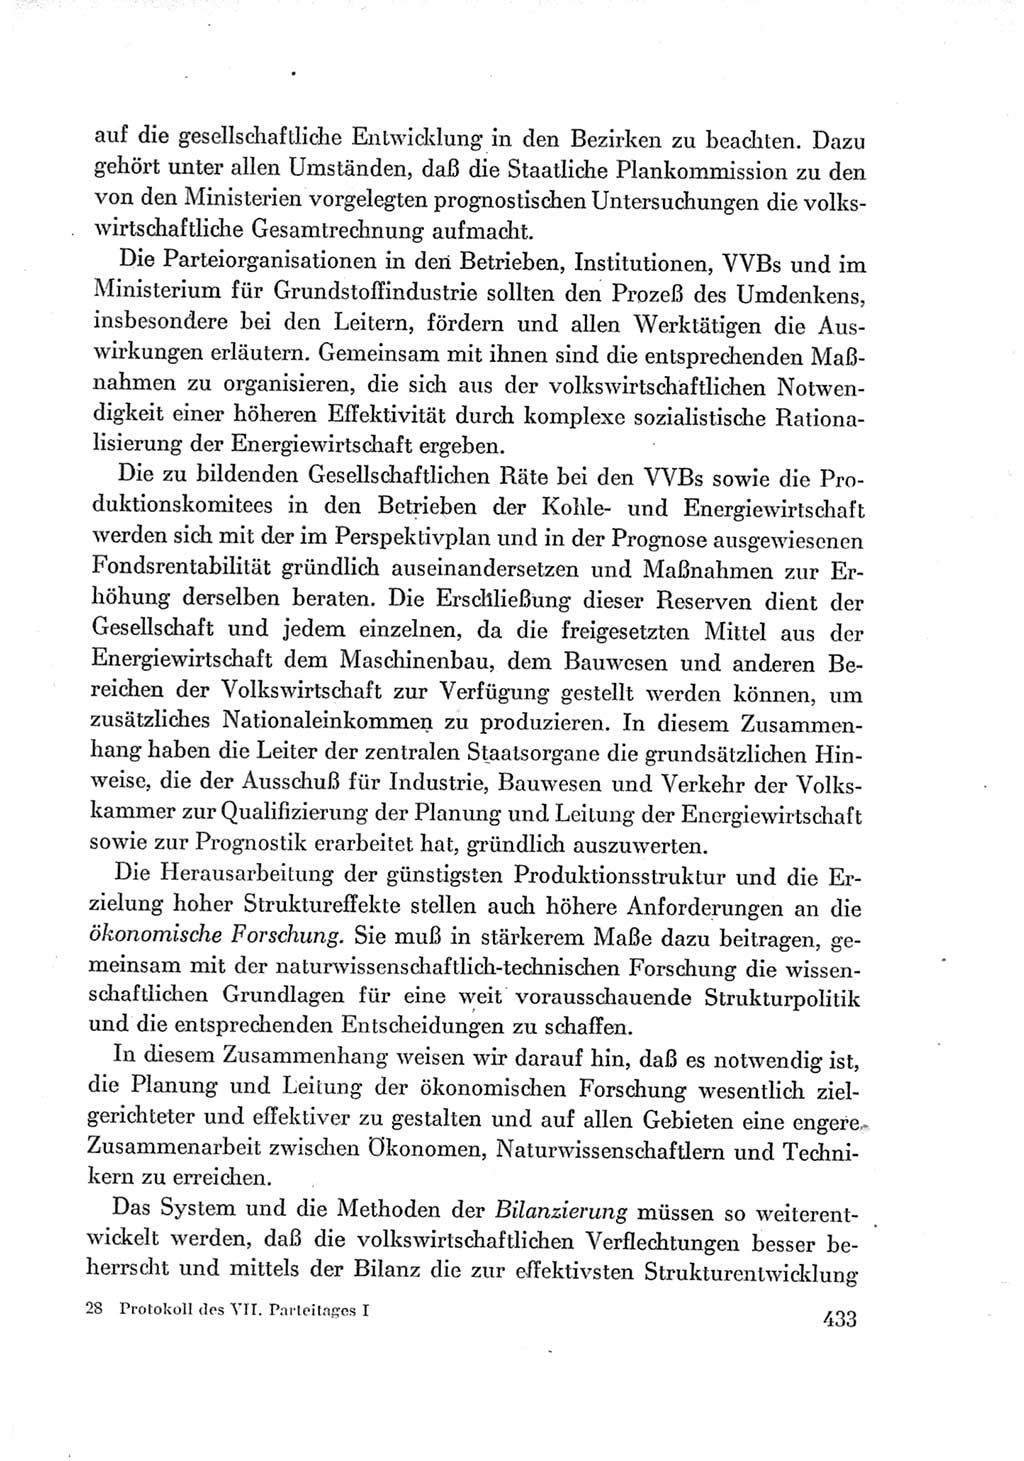 Protokoll der Verhandlungen des Ⅶ. Parteitages der Sozialistischen Einheitspartei Deutschlands (SED) [Deutsche Demokratische Republik (DDR)] 1967, Band Ⅰ, Seite 433 (Prot. Verh. Ⅶ. PT SED DDR 1967, Bd. Ⅰ, S. 433)